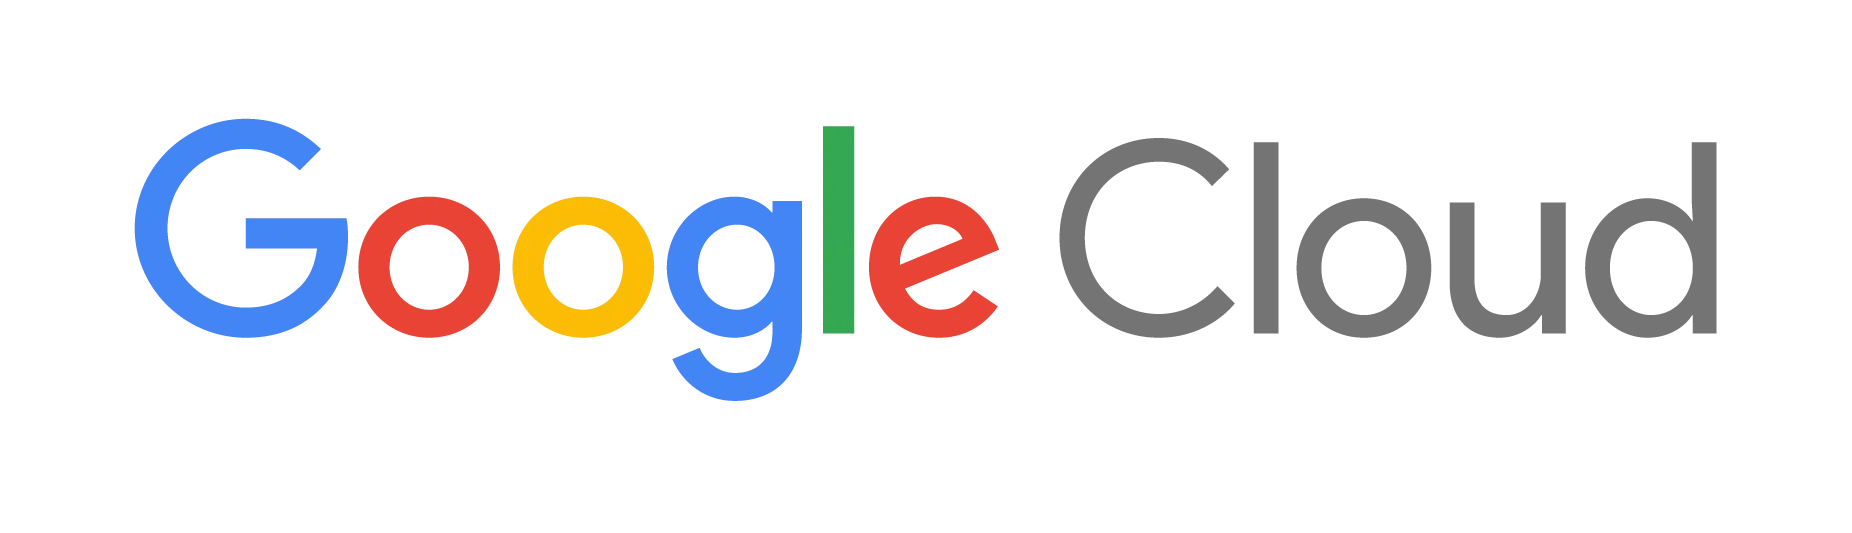 SpinAI and Google